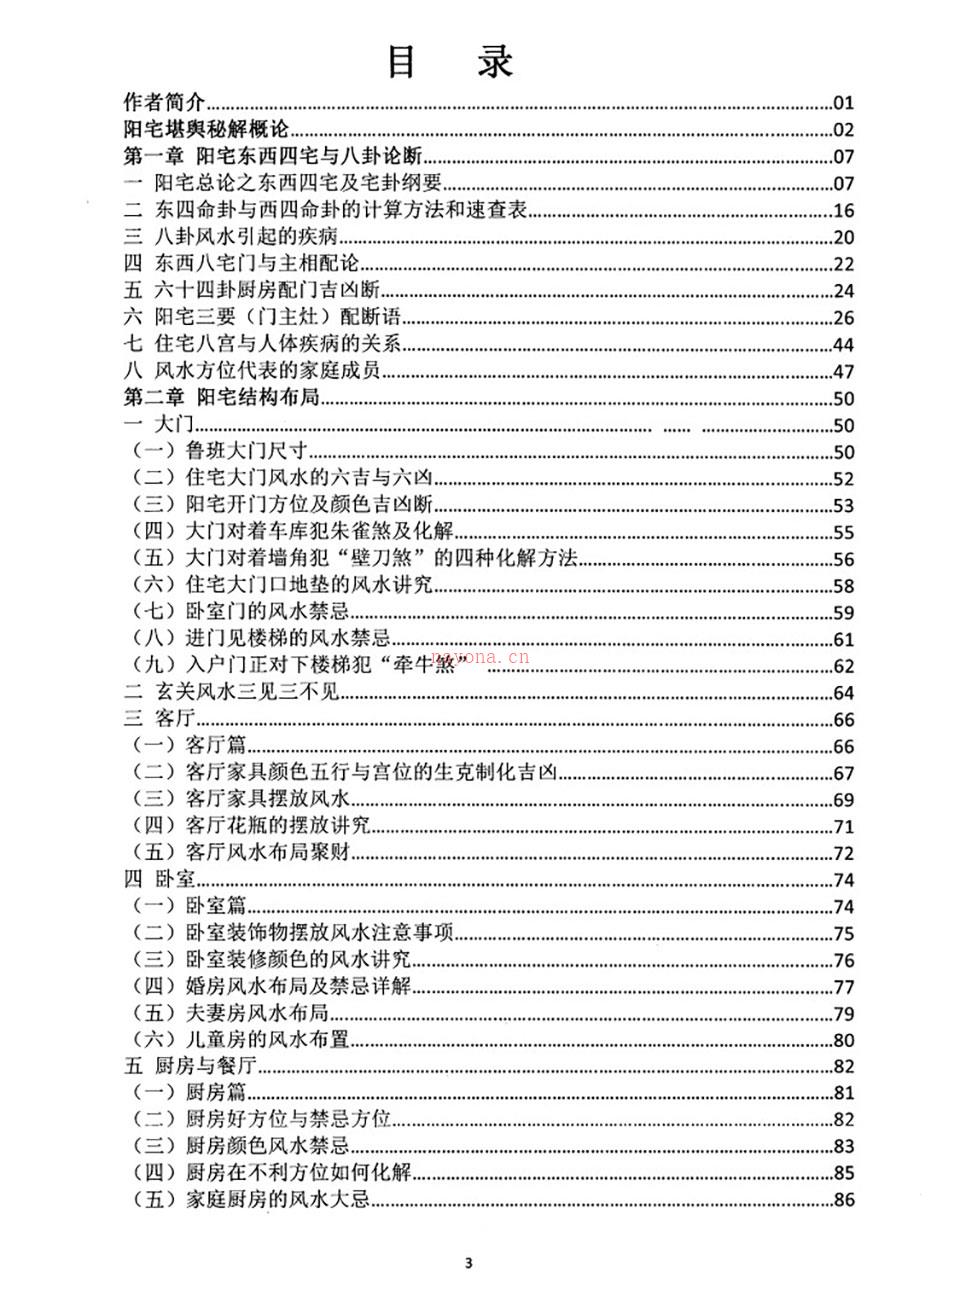 朱氏阳宅堪舆秘解290页.pdf 百度网盘资源